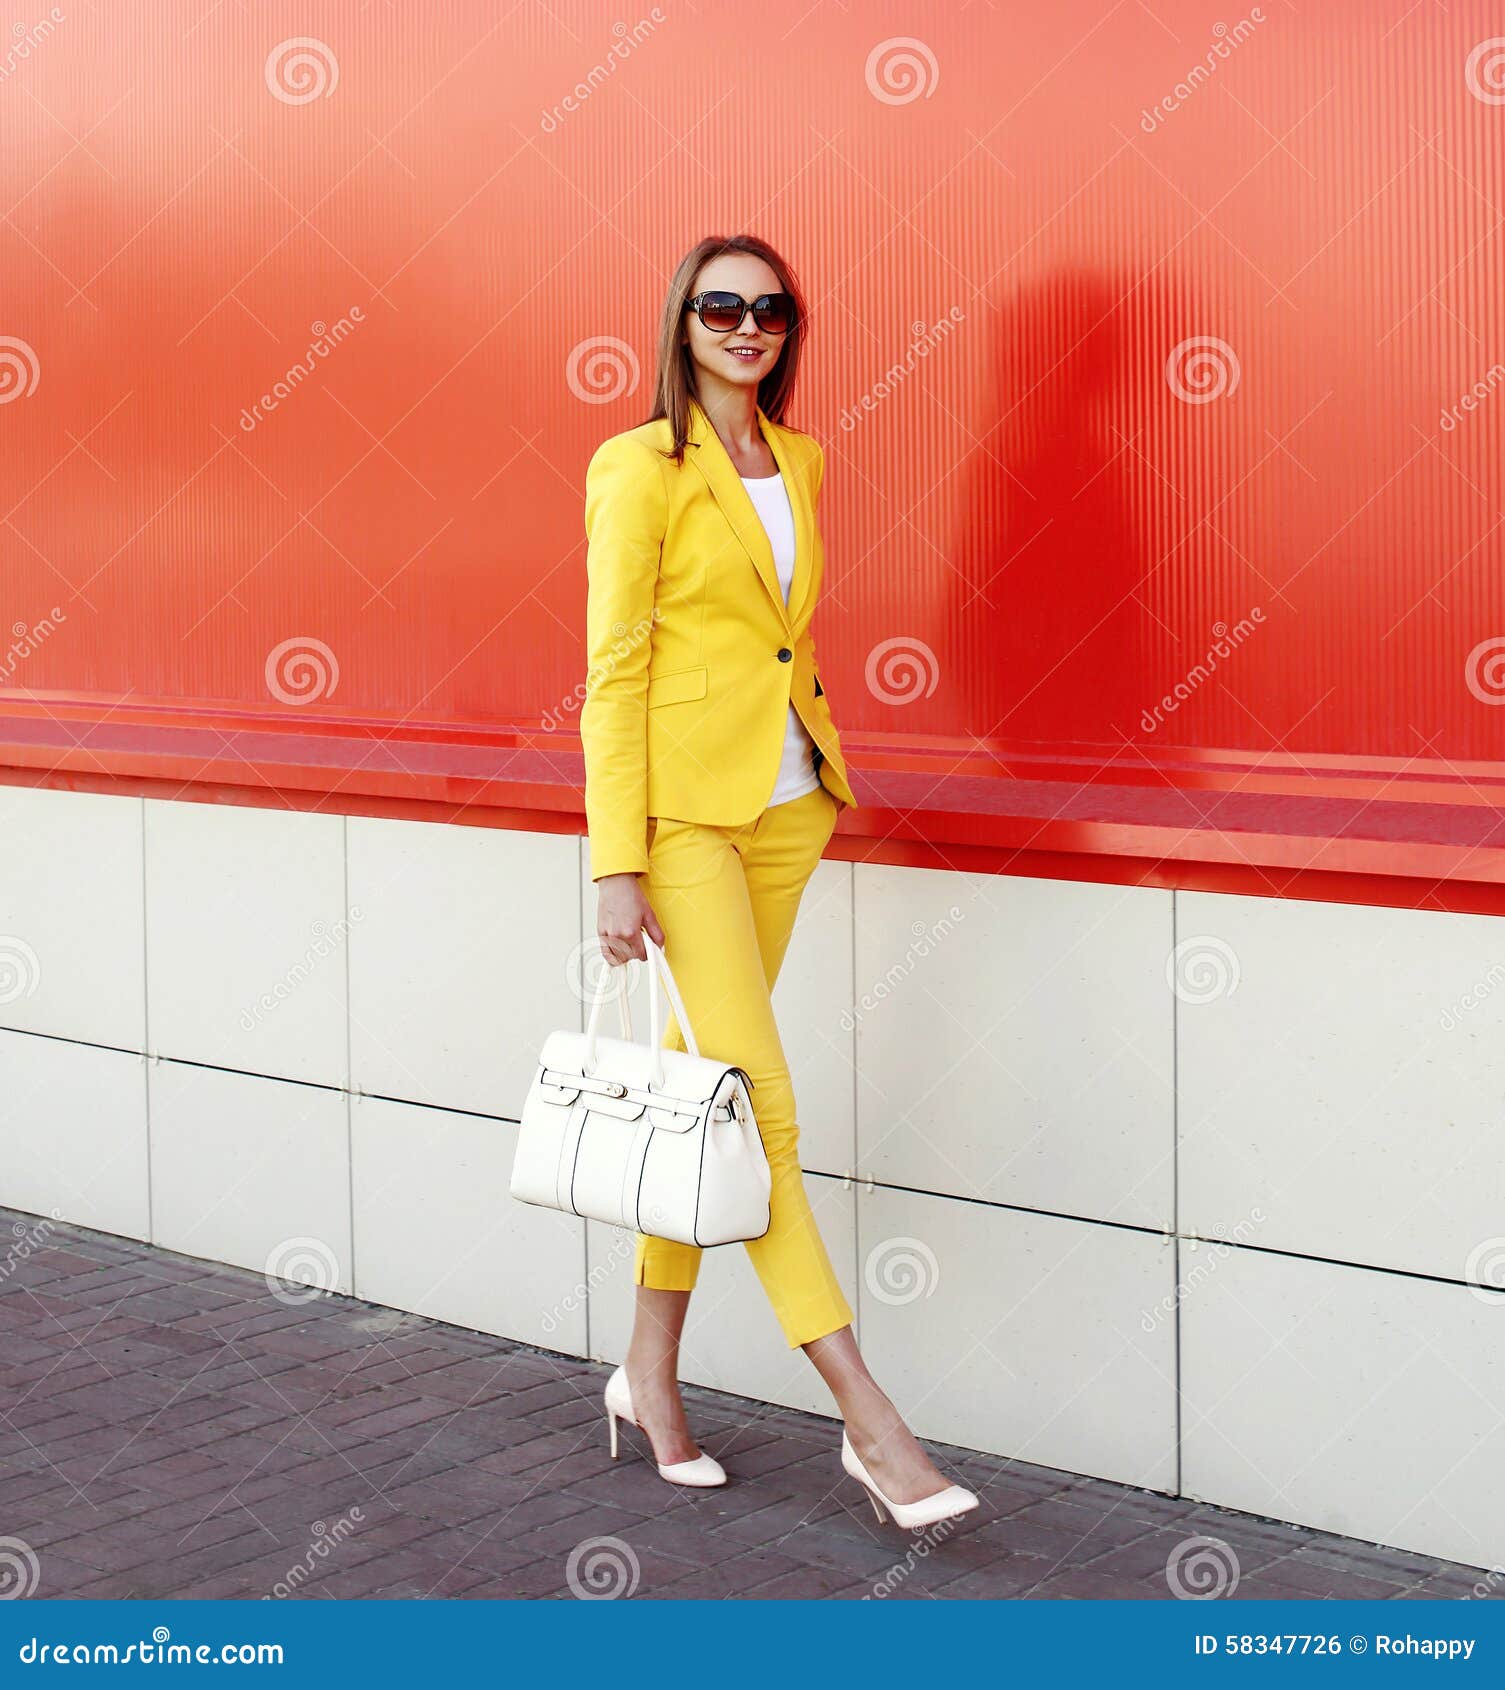 https://thumbs.dreamstime.com/z/forme-mujer-elegante-la-ropa-amarilla-de-un-traje-que-lleva-58347726.jpg